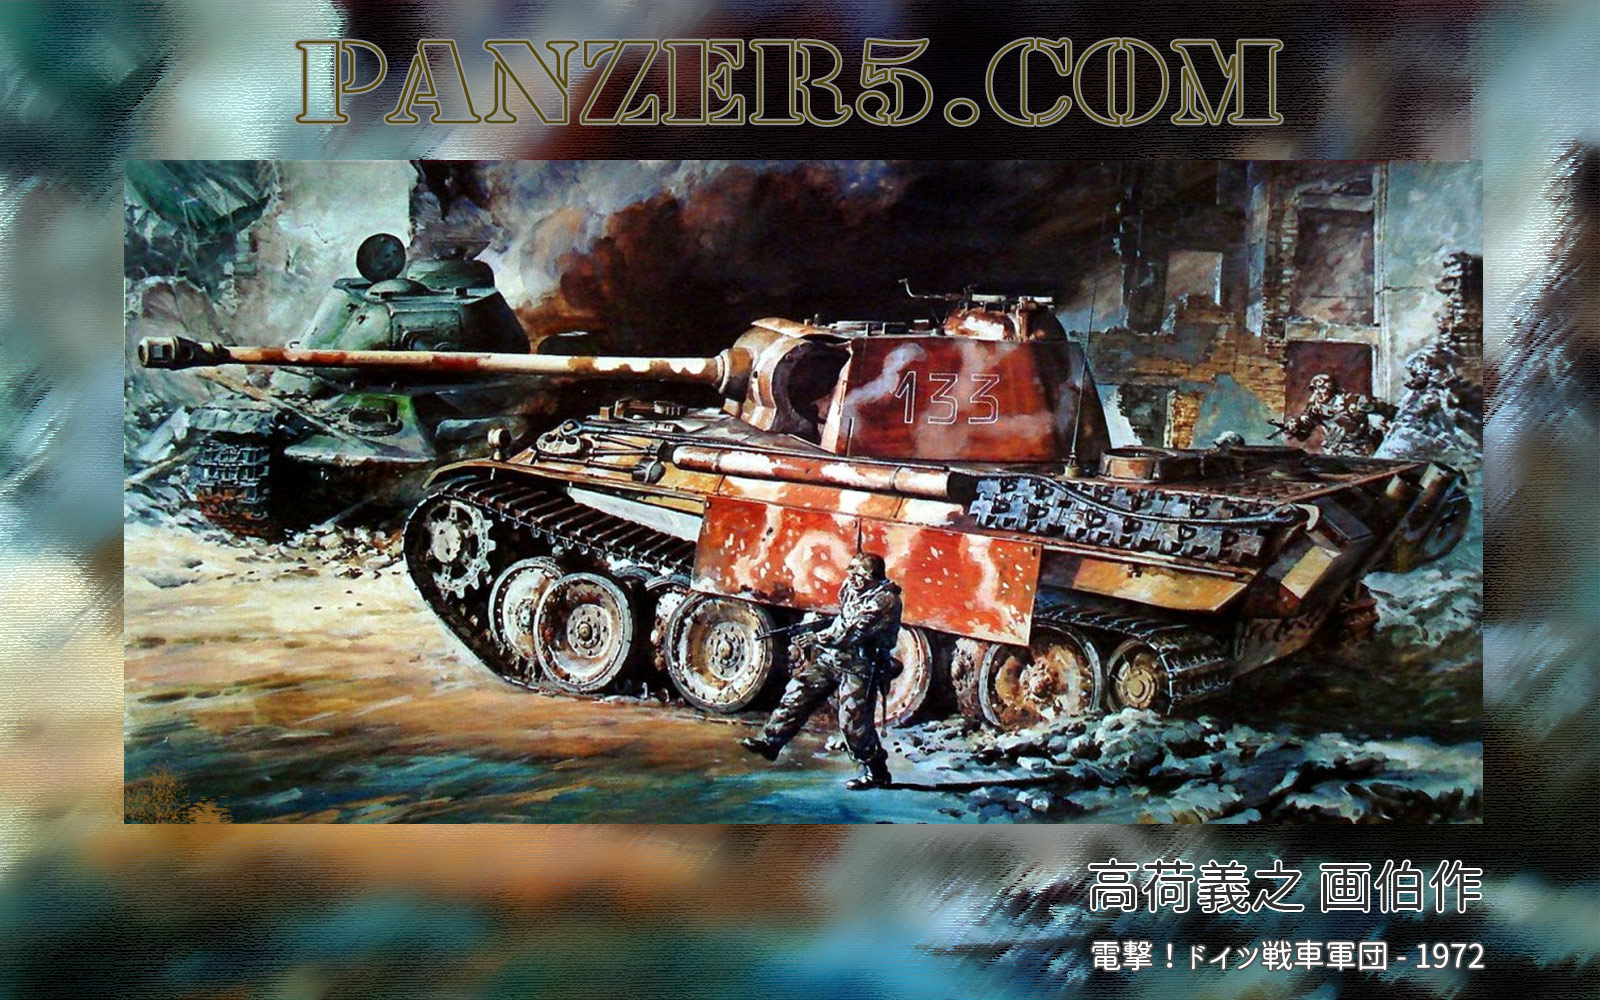 高荷義之 - Panzerkampfwagen V Panther - Sd.Kfz. 171